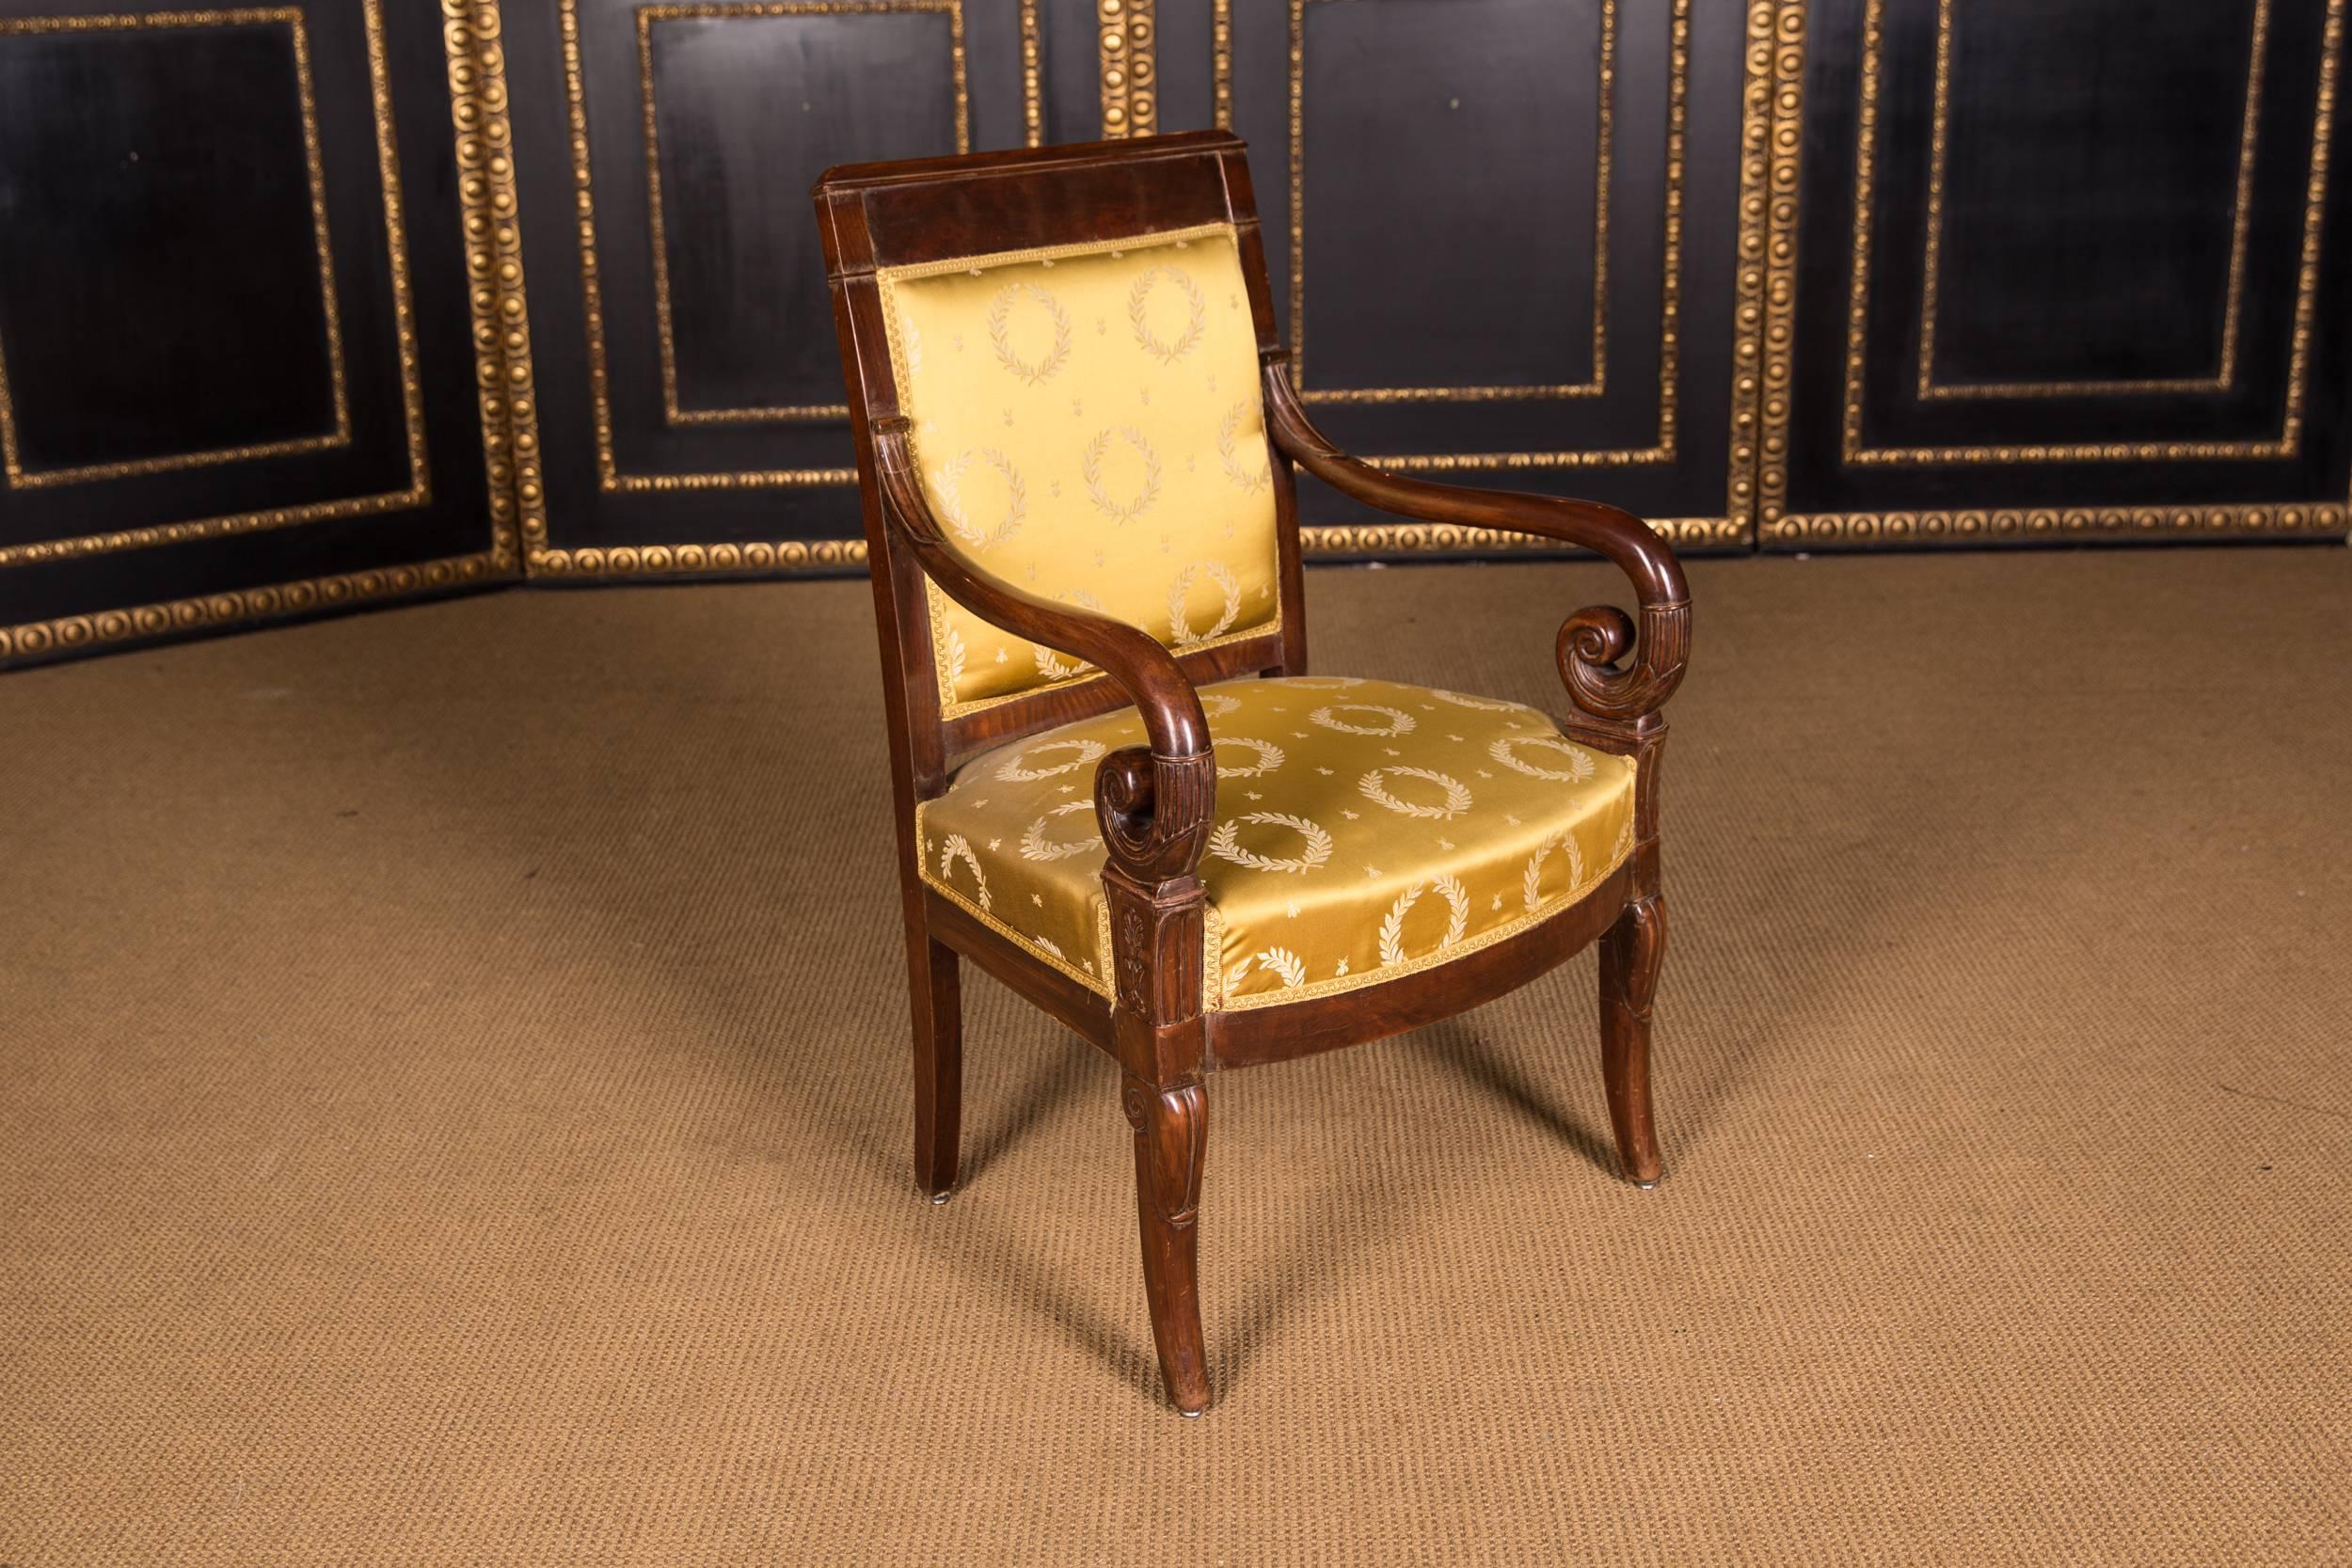 19th Century Original French Empire Sofa and Armchair Set Made from Mahogany (Mahagoni)